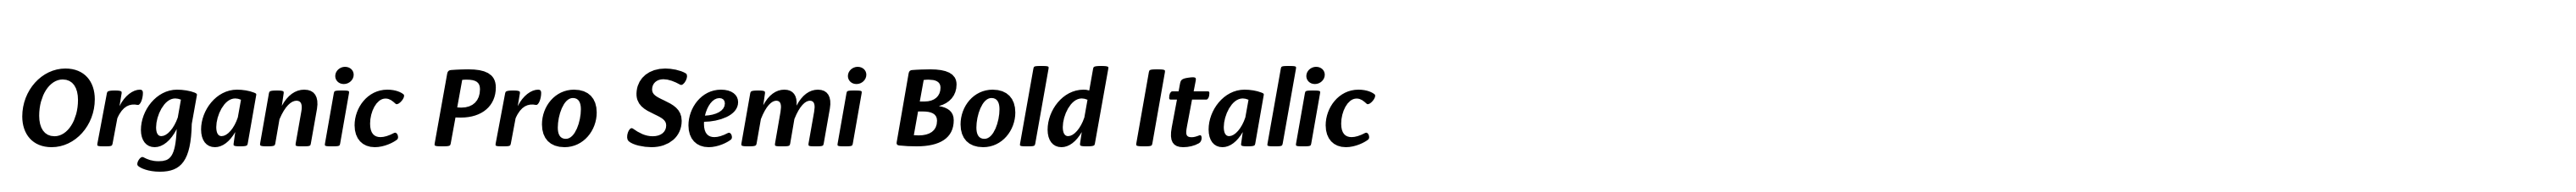 Organic Pro Semi Bold Italic